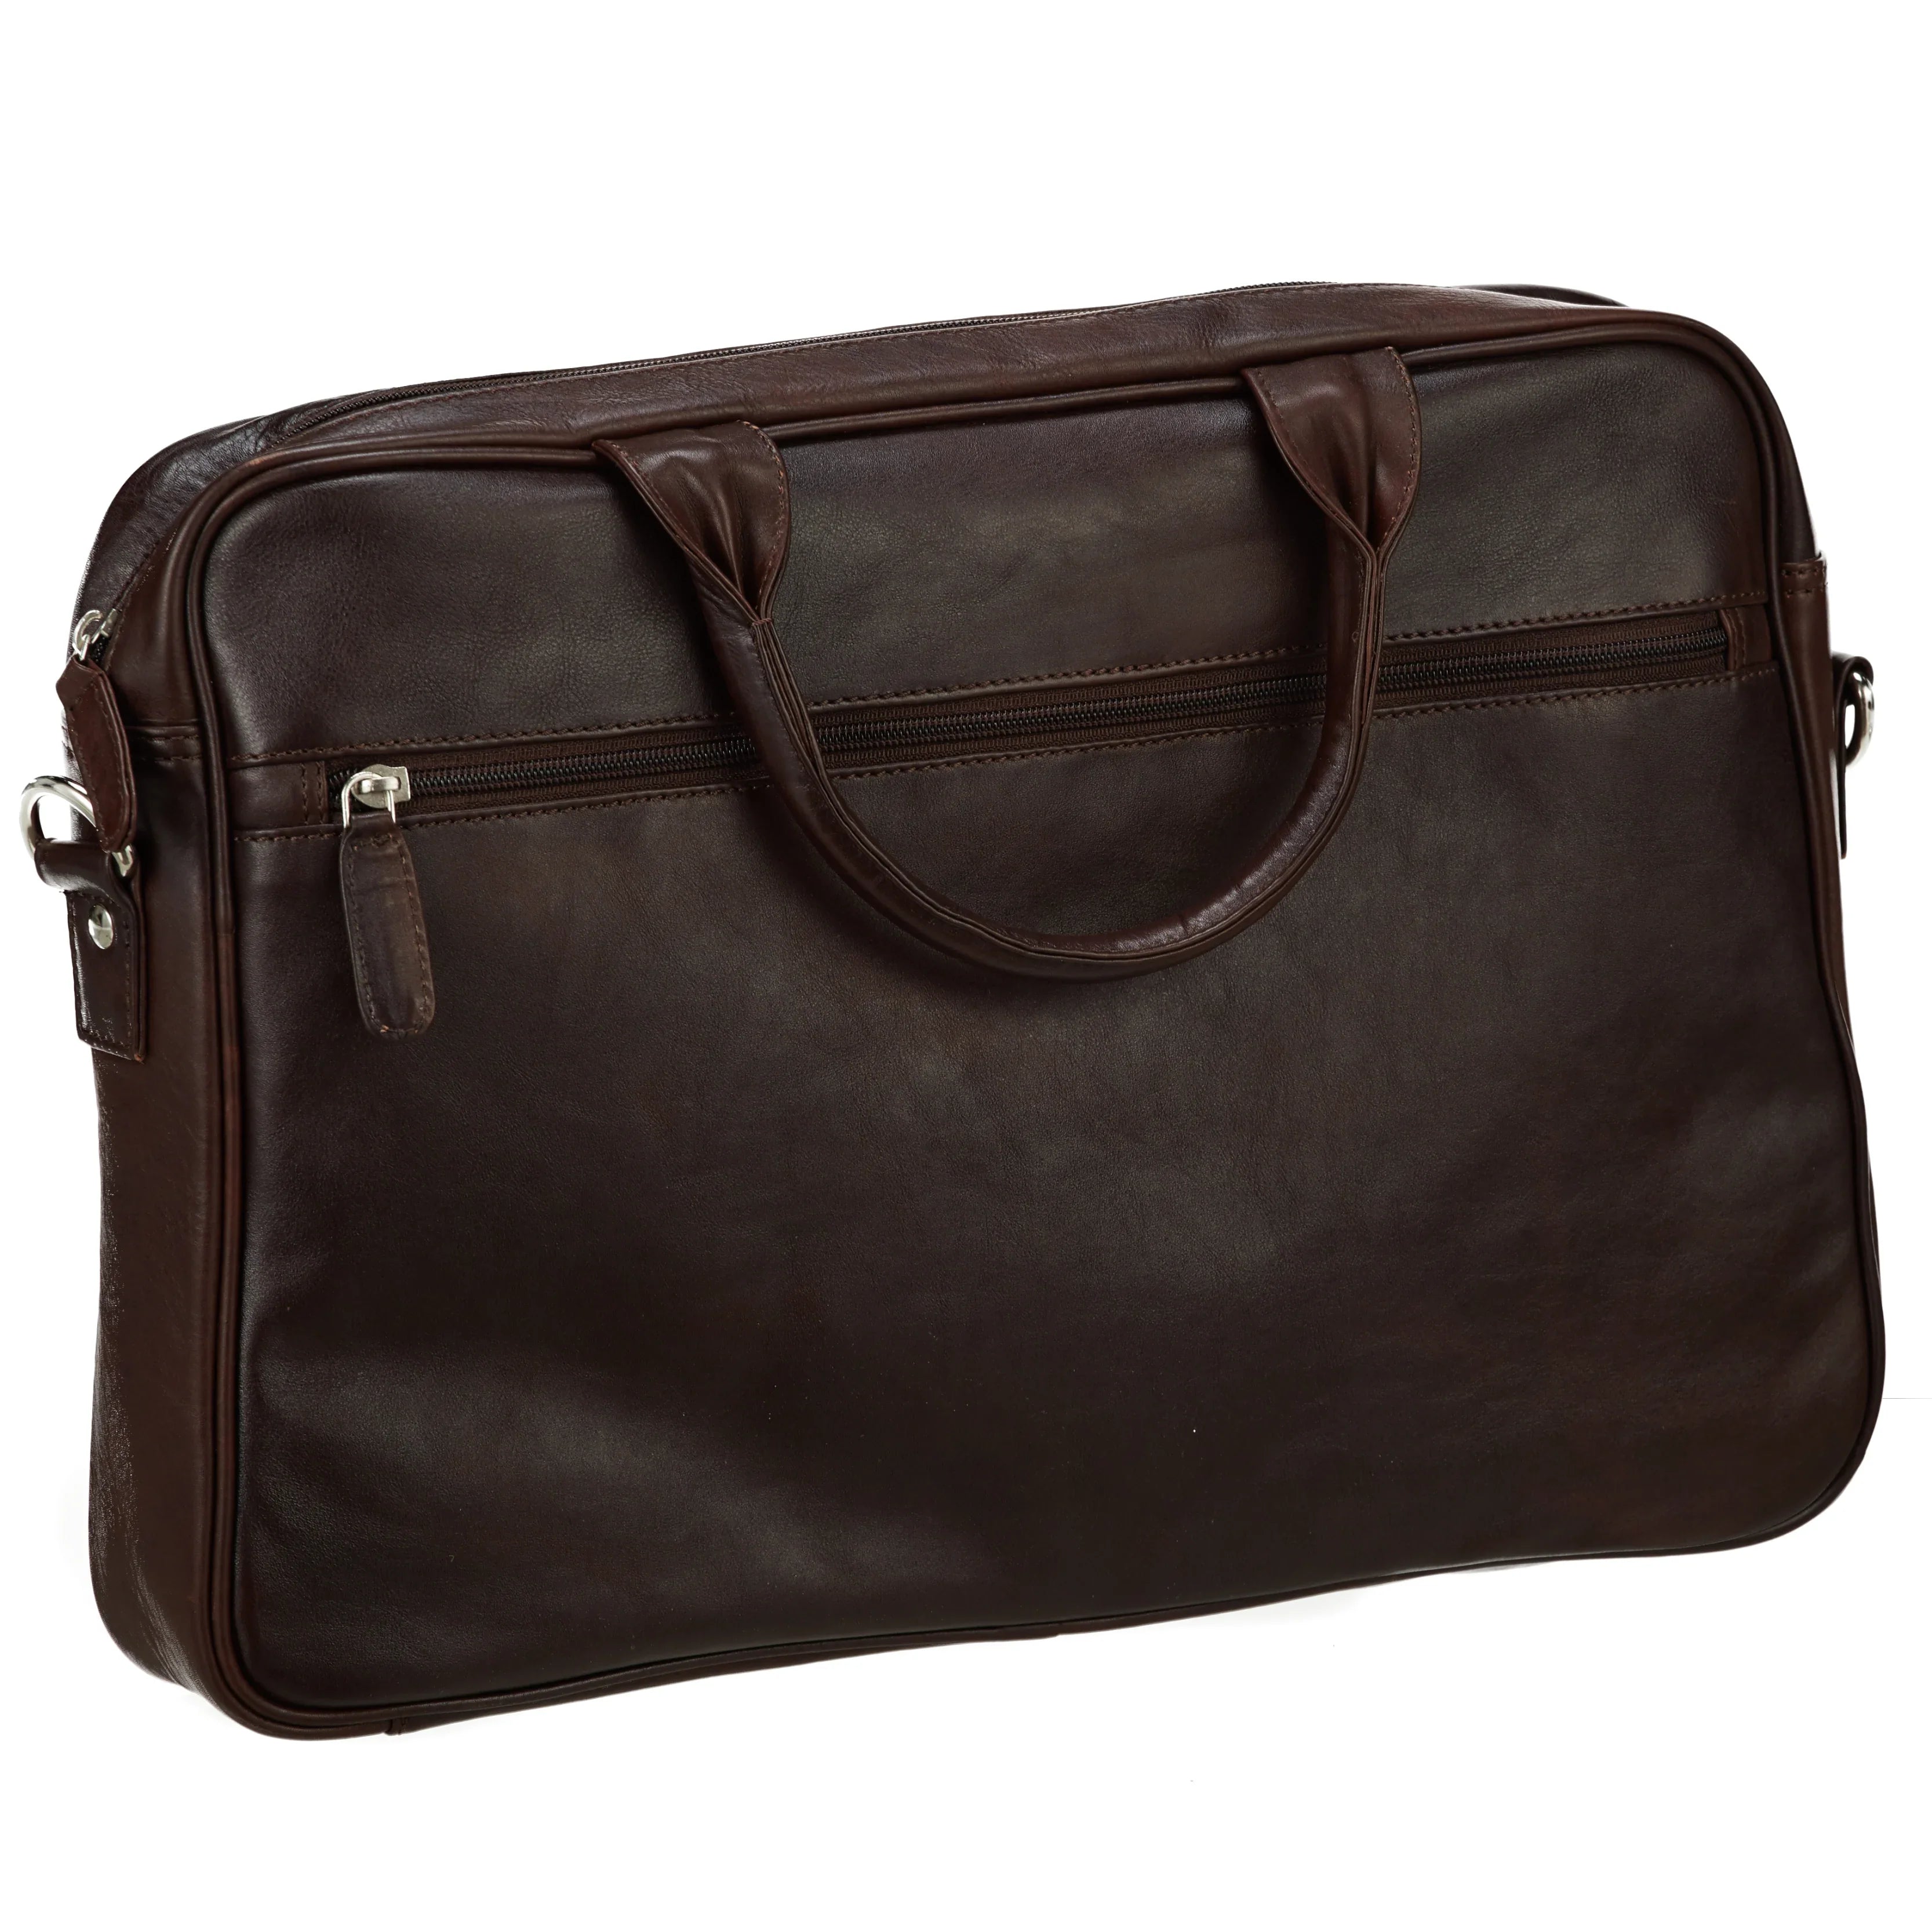 Dermata Business Laptop Briefcase 41 cm - Cognac